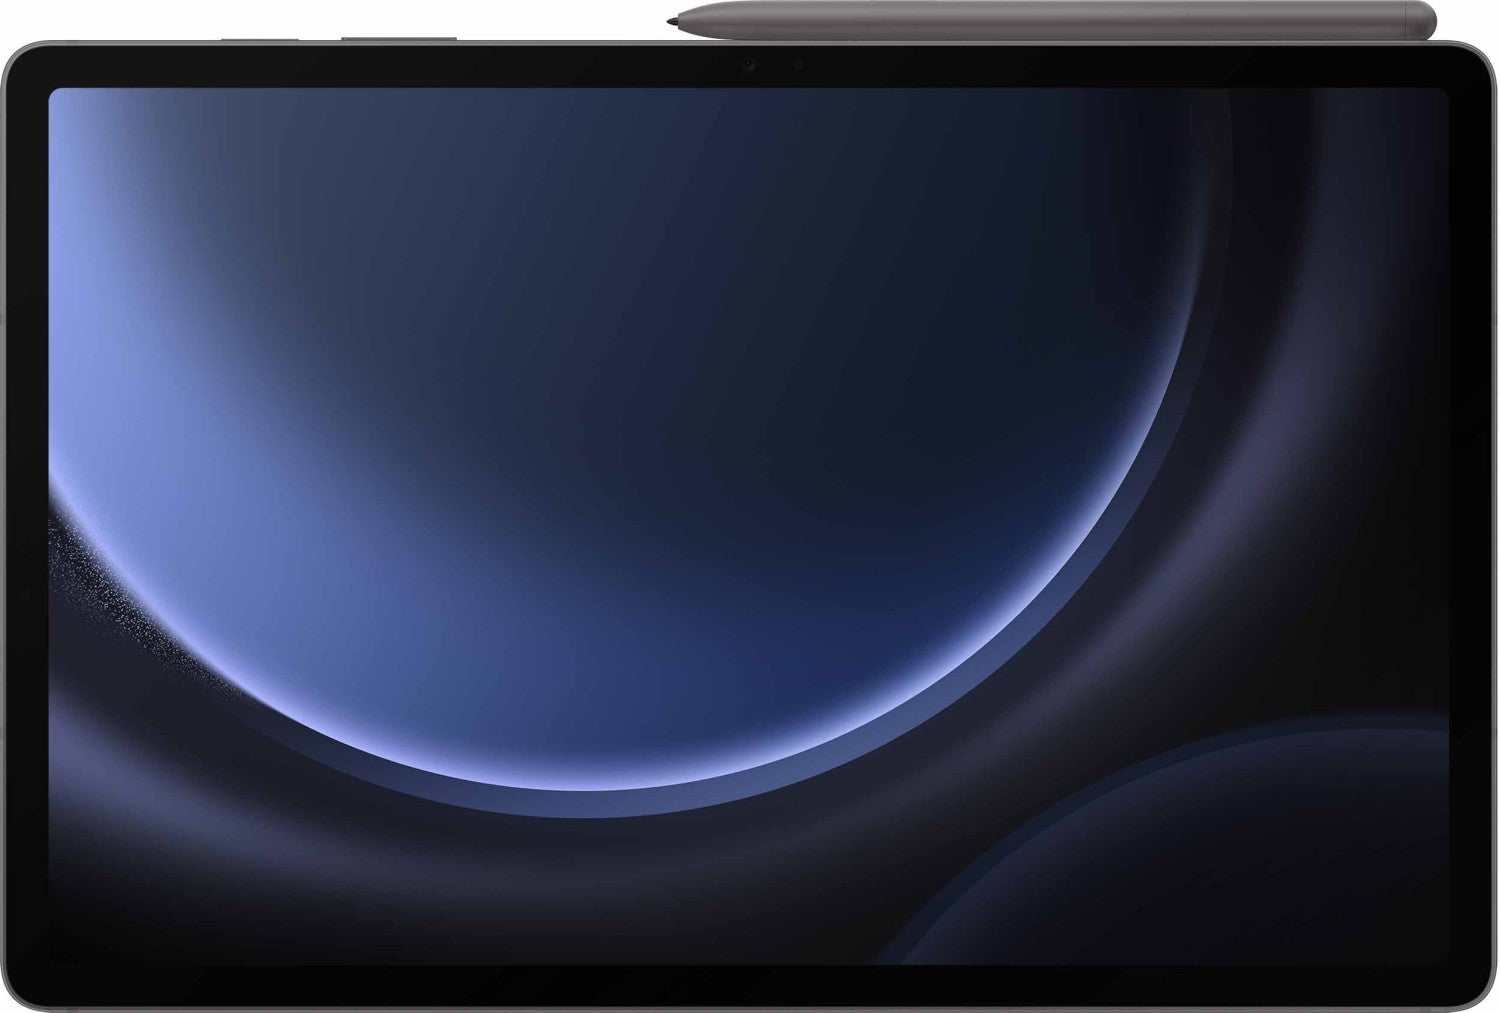 Samsung Galaxy Tab S9 FE+ 128GB WiFi grau